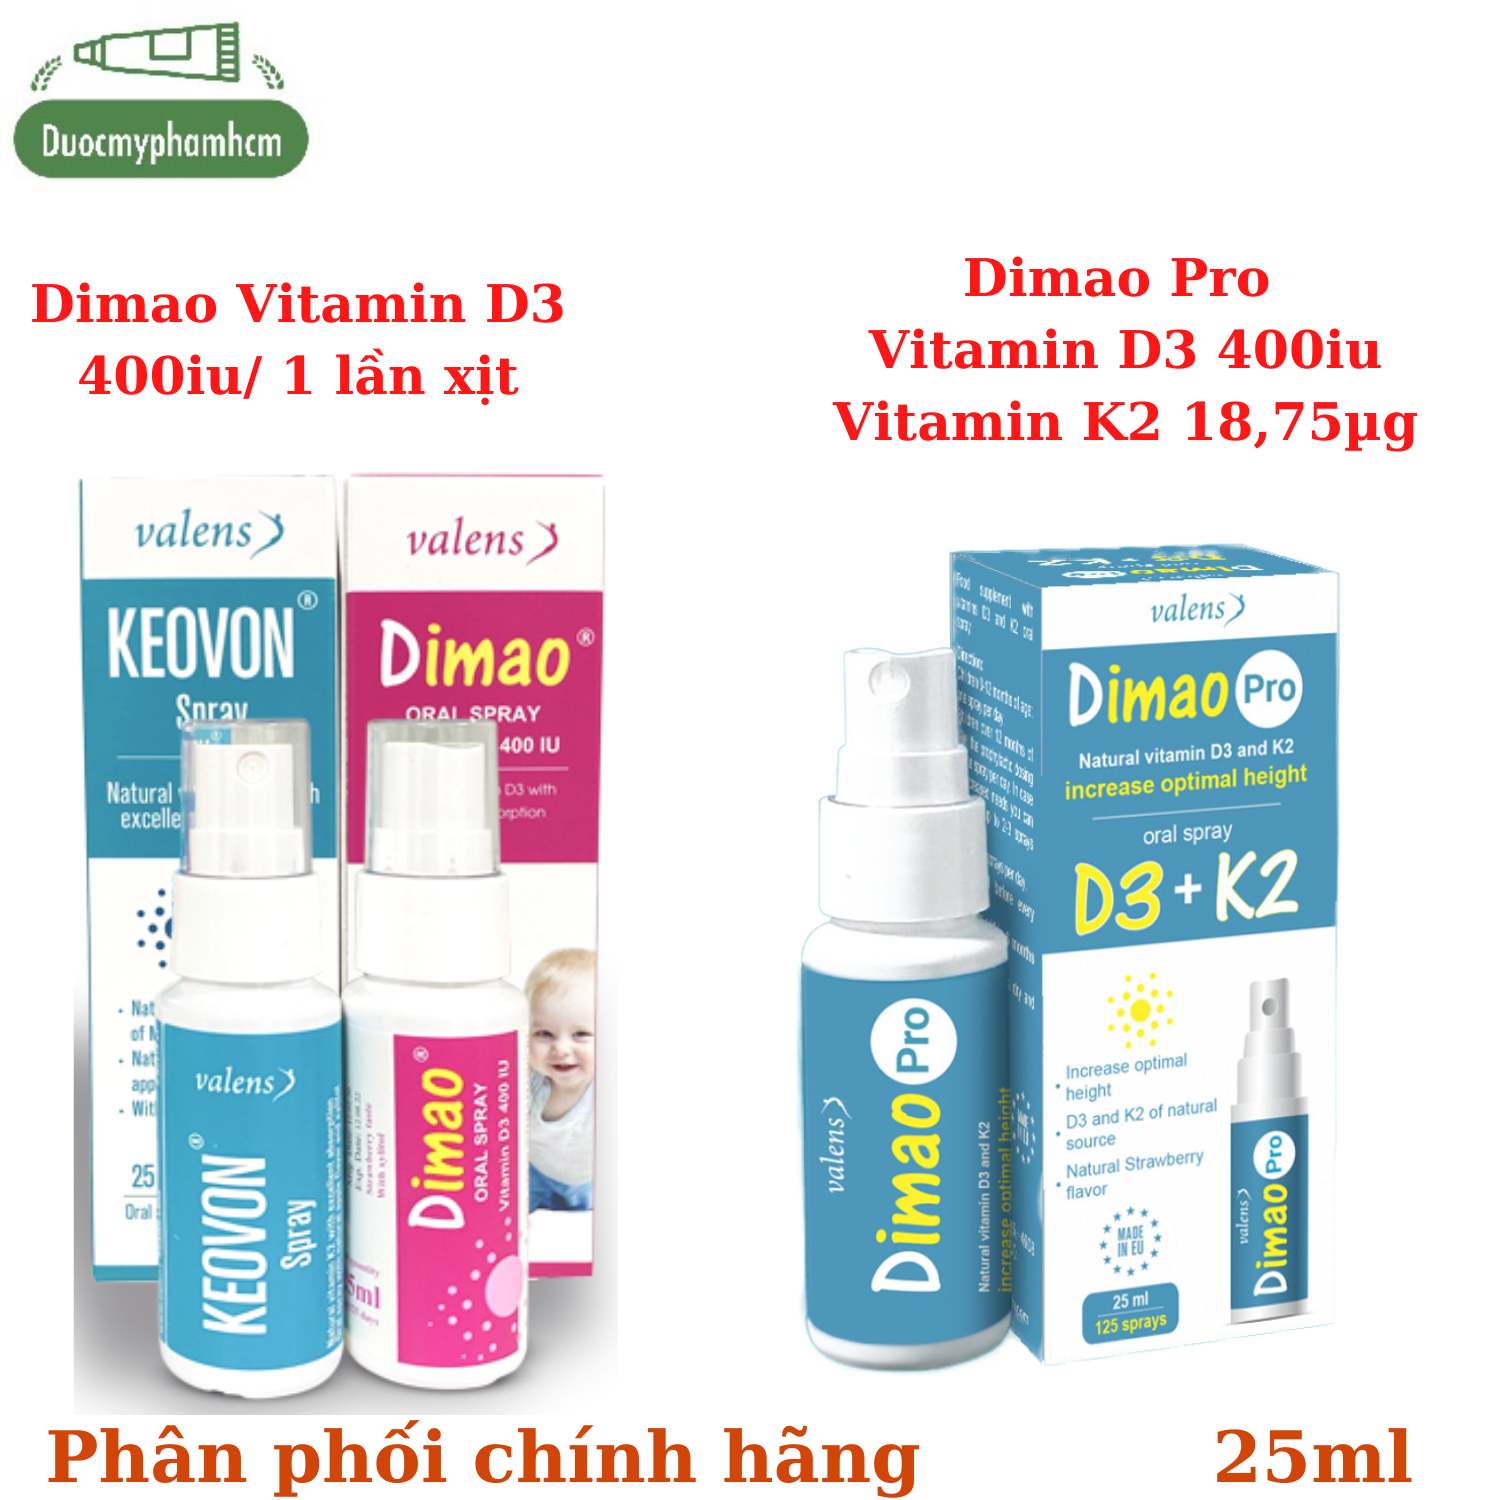 Dimao - Vitamin D3 Dạng Xịt 400IU Hàng Nhập Khẩu Châu Âu Hương Dâu Hiệu